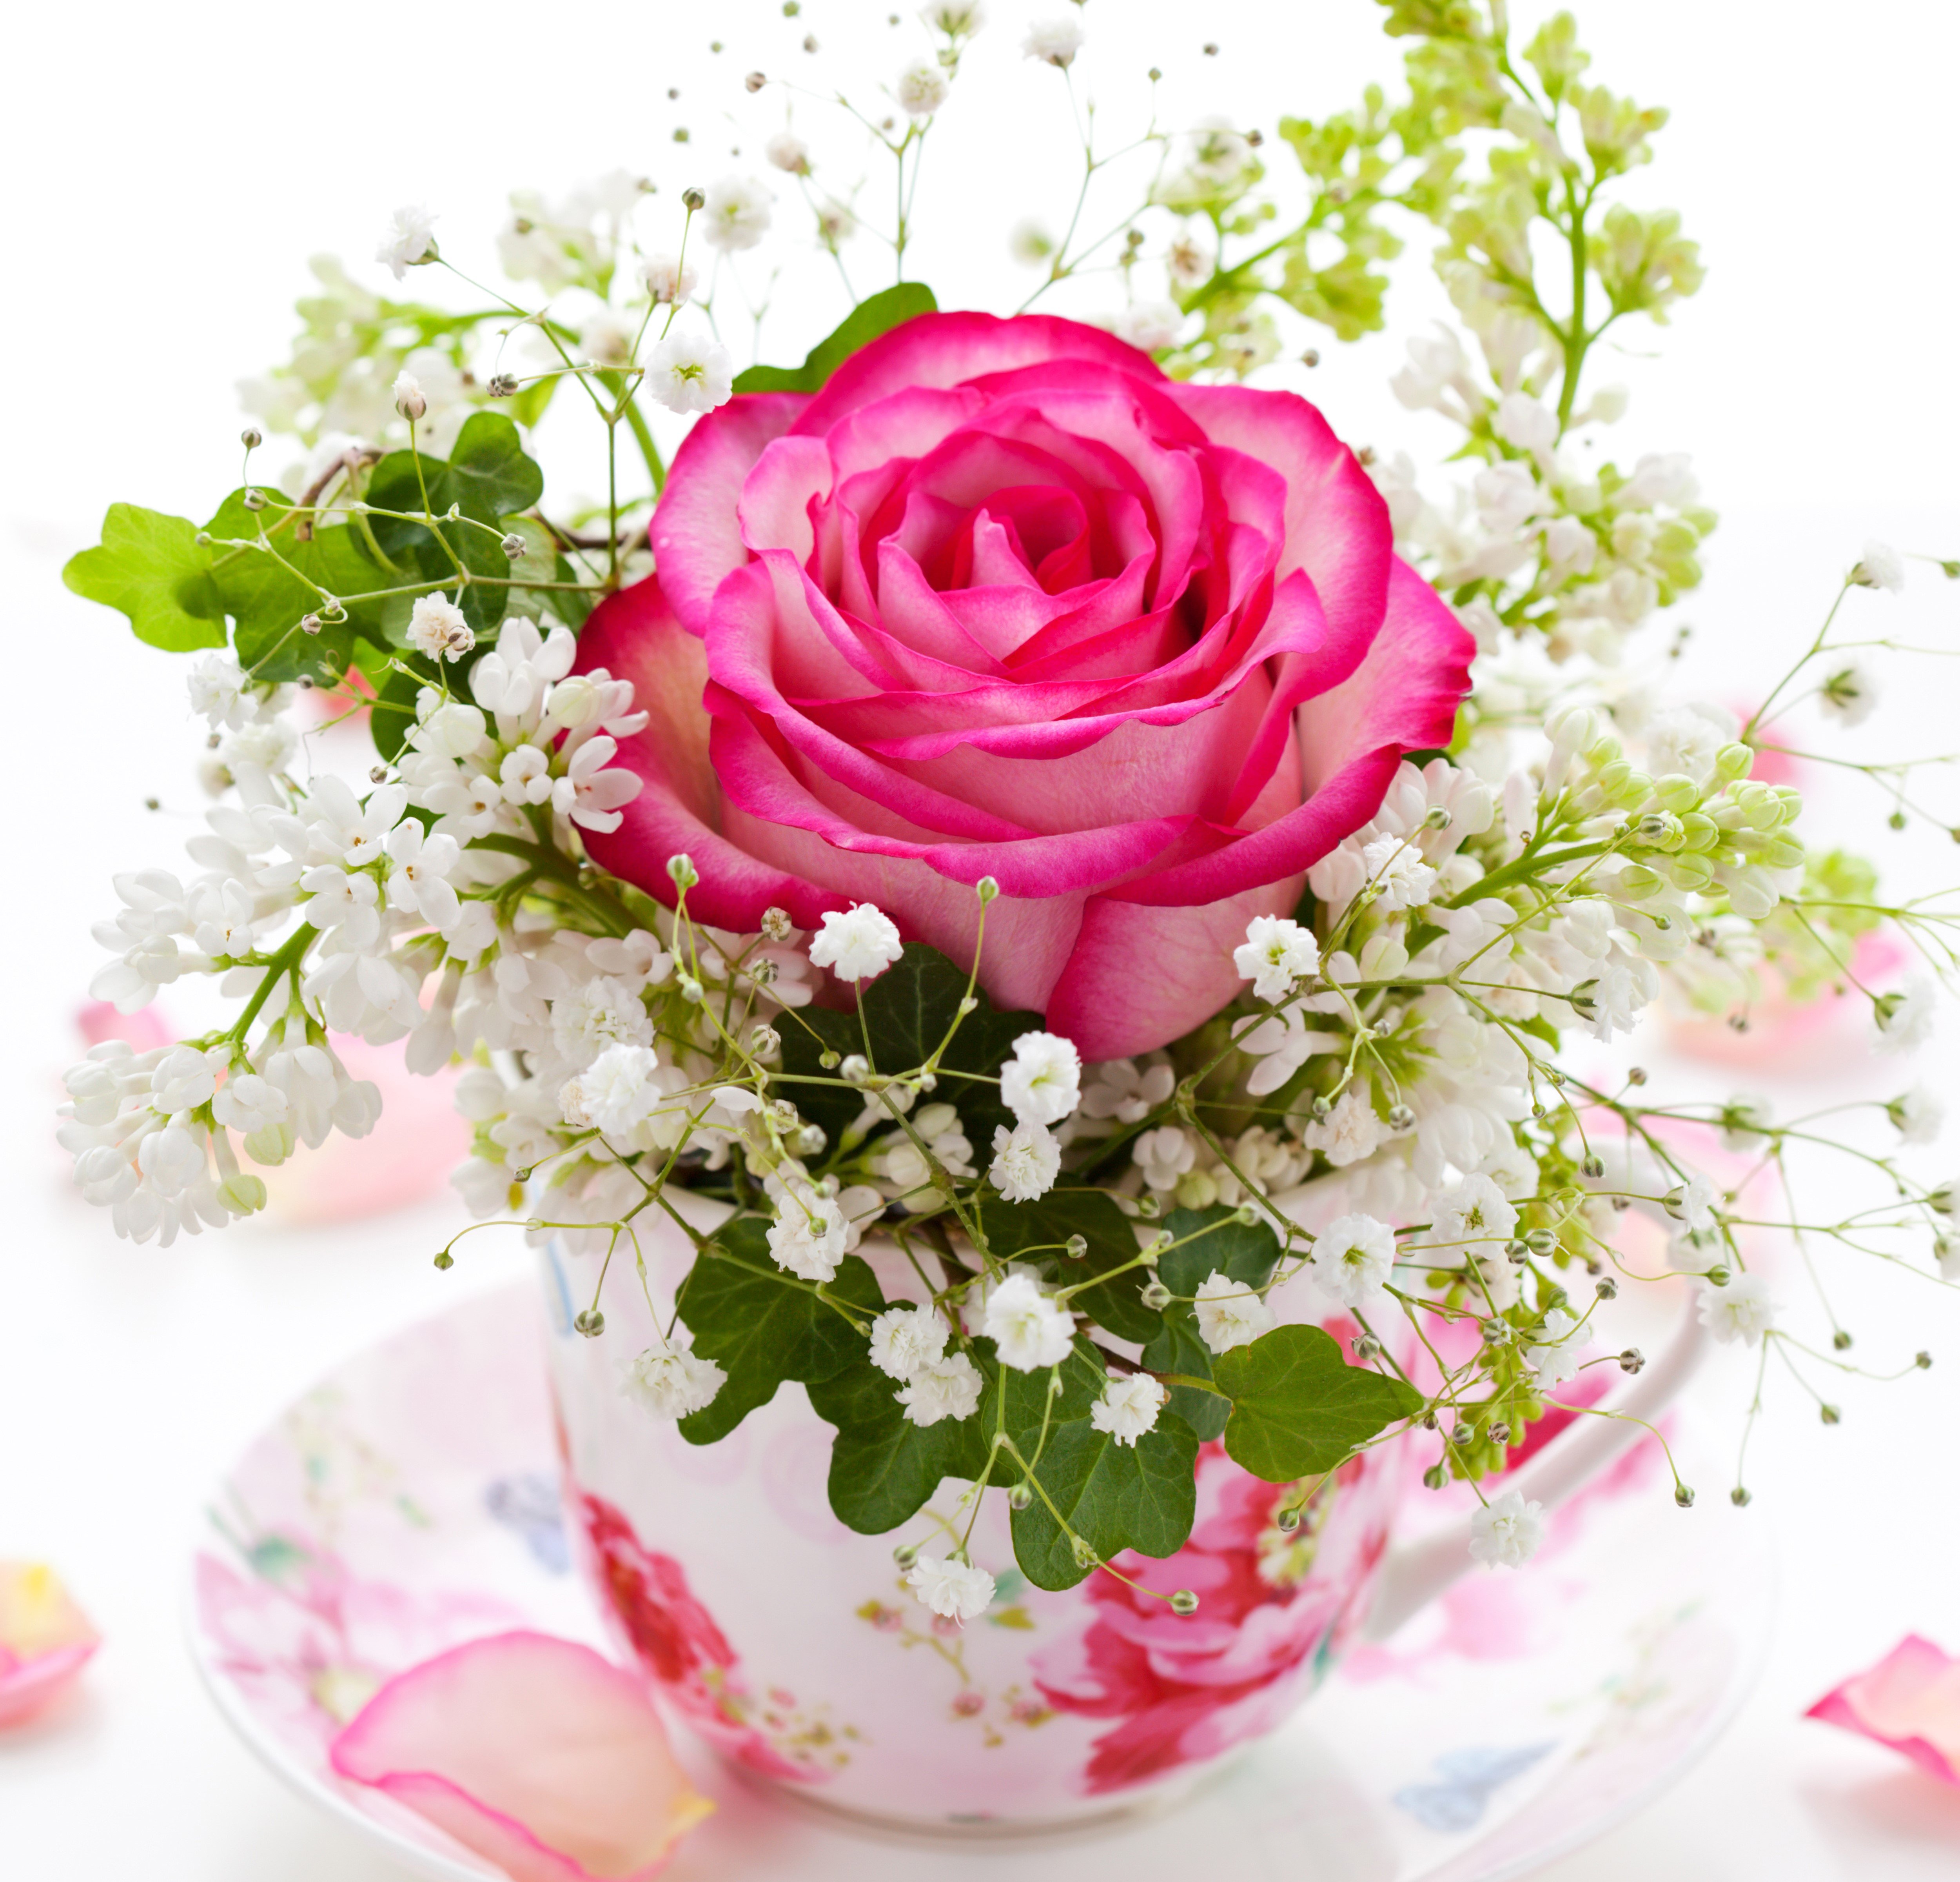 Картинка с цветами красивая хорошего дня. Красивые цветы в вазе. Красивый букет в вазе. Цветы в кружке. Открытка цветы.